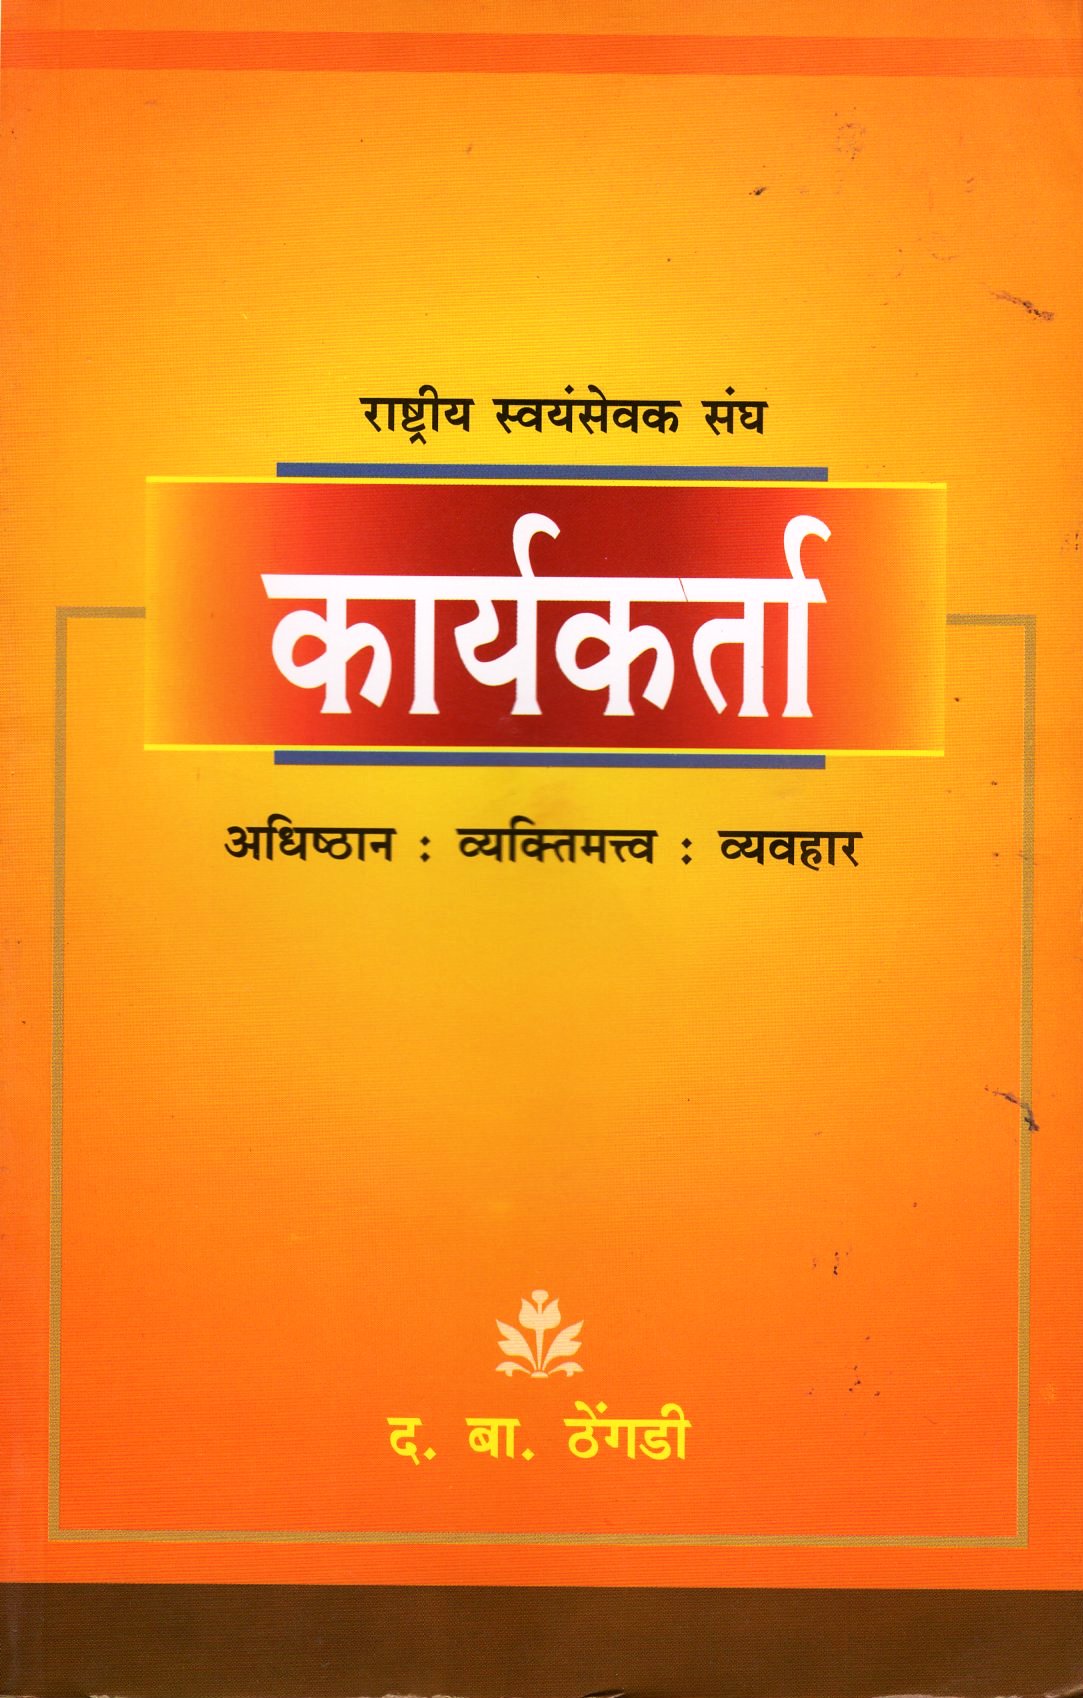 Rashtriya Swayamsevak Sangh Kariyakarta - Hindi